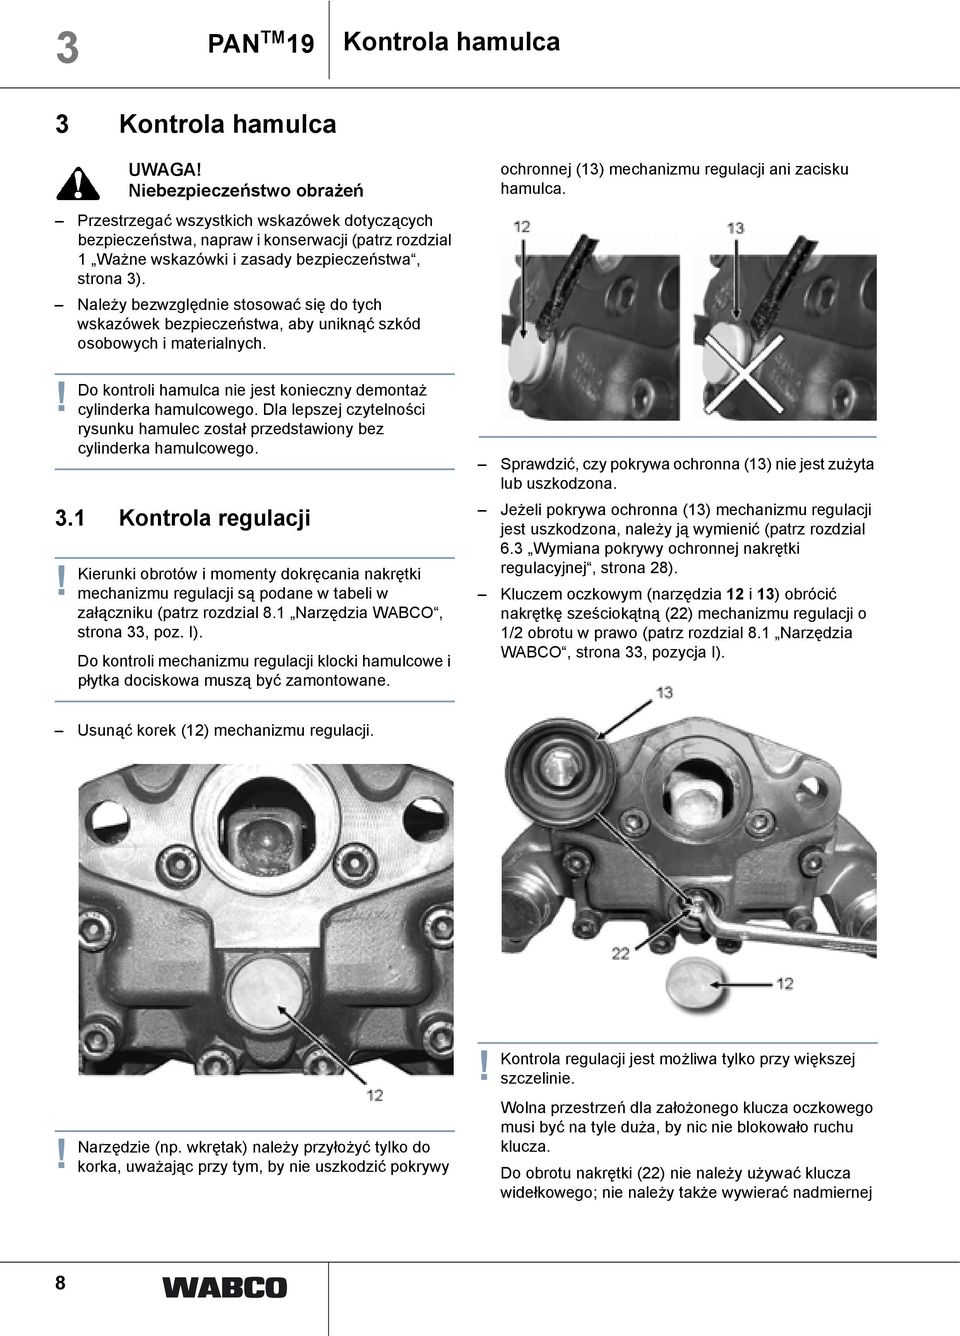 Do kontroli hamulca nie jest konieczny demontaż cylinderka hamulcowego. Dla lepszej czytelności rysunku hamulec został przedstawiony bez cylinderka hamulcowego. 3.